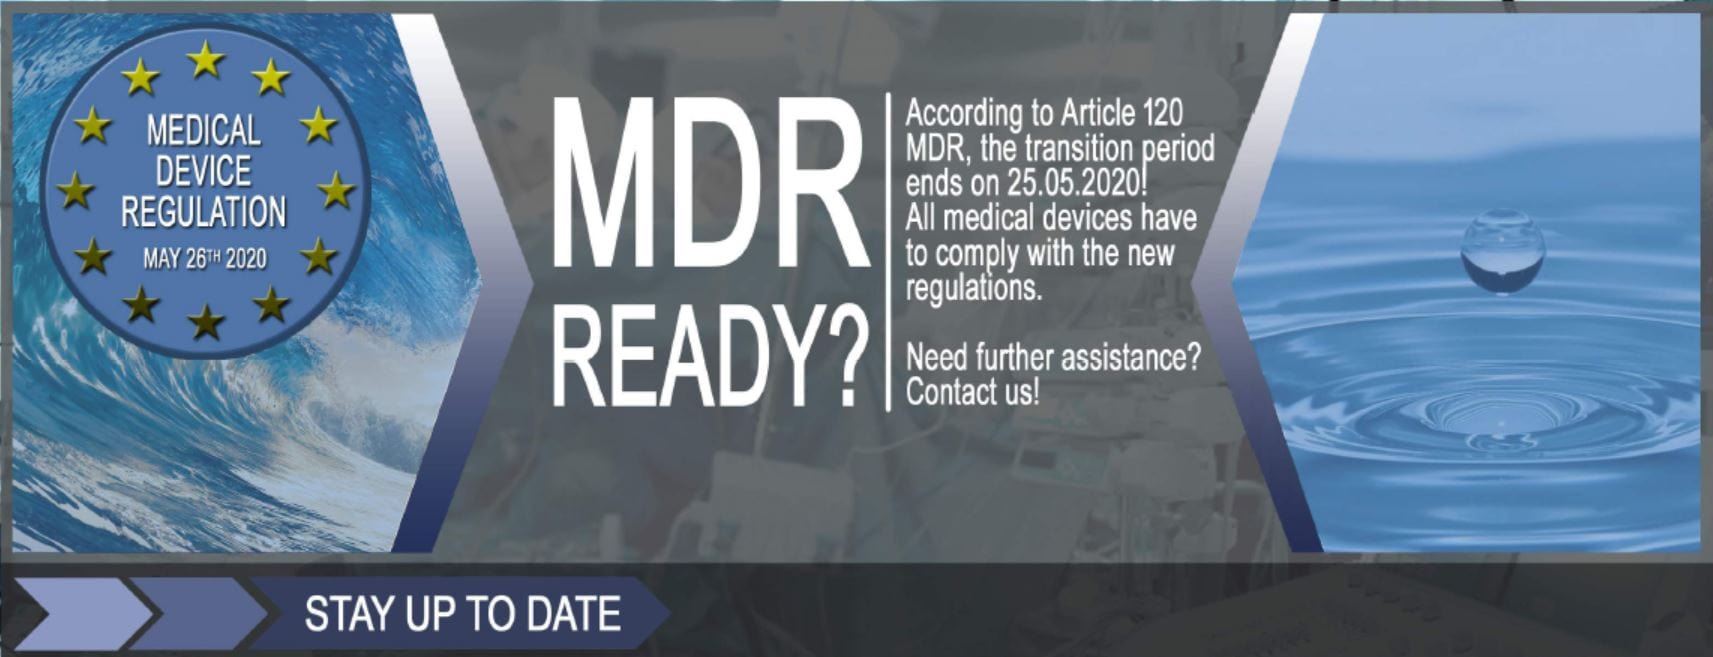 EU-Medical Device Regulation MDR